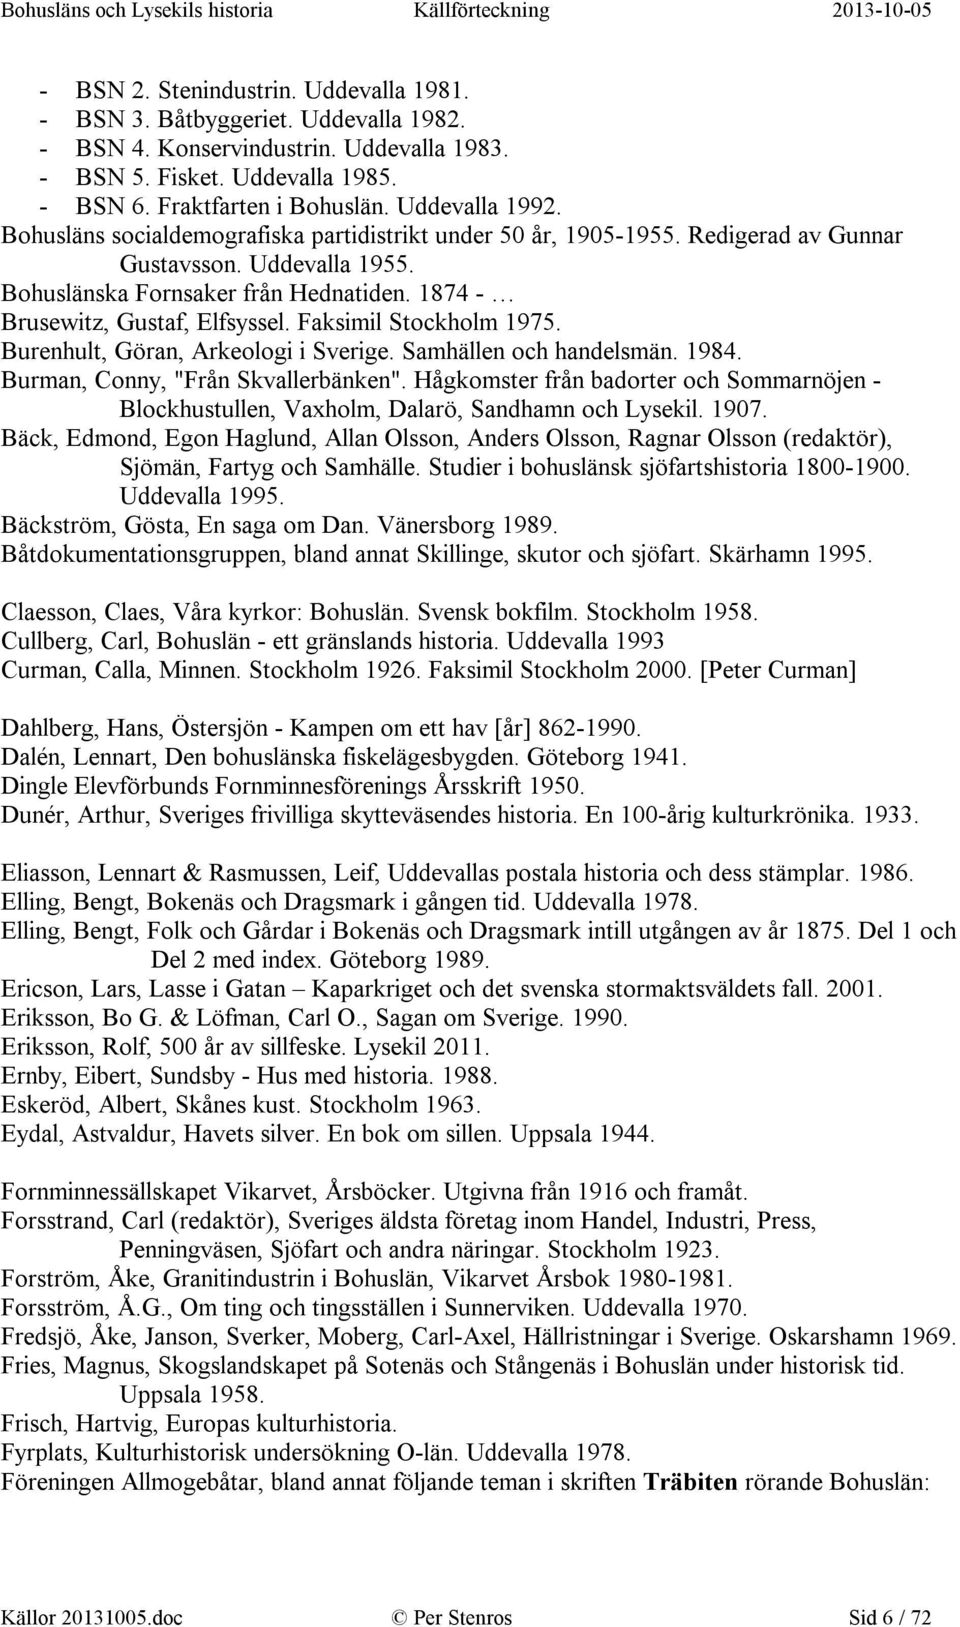 1874 - Brusewitz, Gustaf, Elfsyssel. Faksimil Stockholm 1975. Burenhult, Göran, Arkeologi i Sverige. Samhällen och handelsmän. 1984. Burman, Conny, "Från Skvallerbänken".